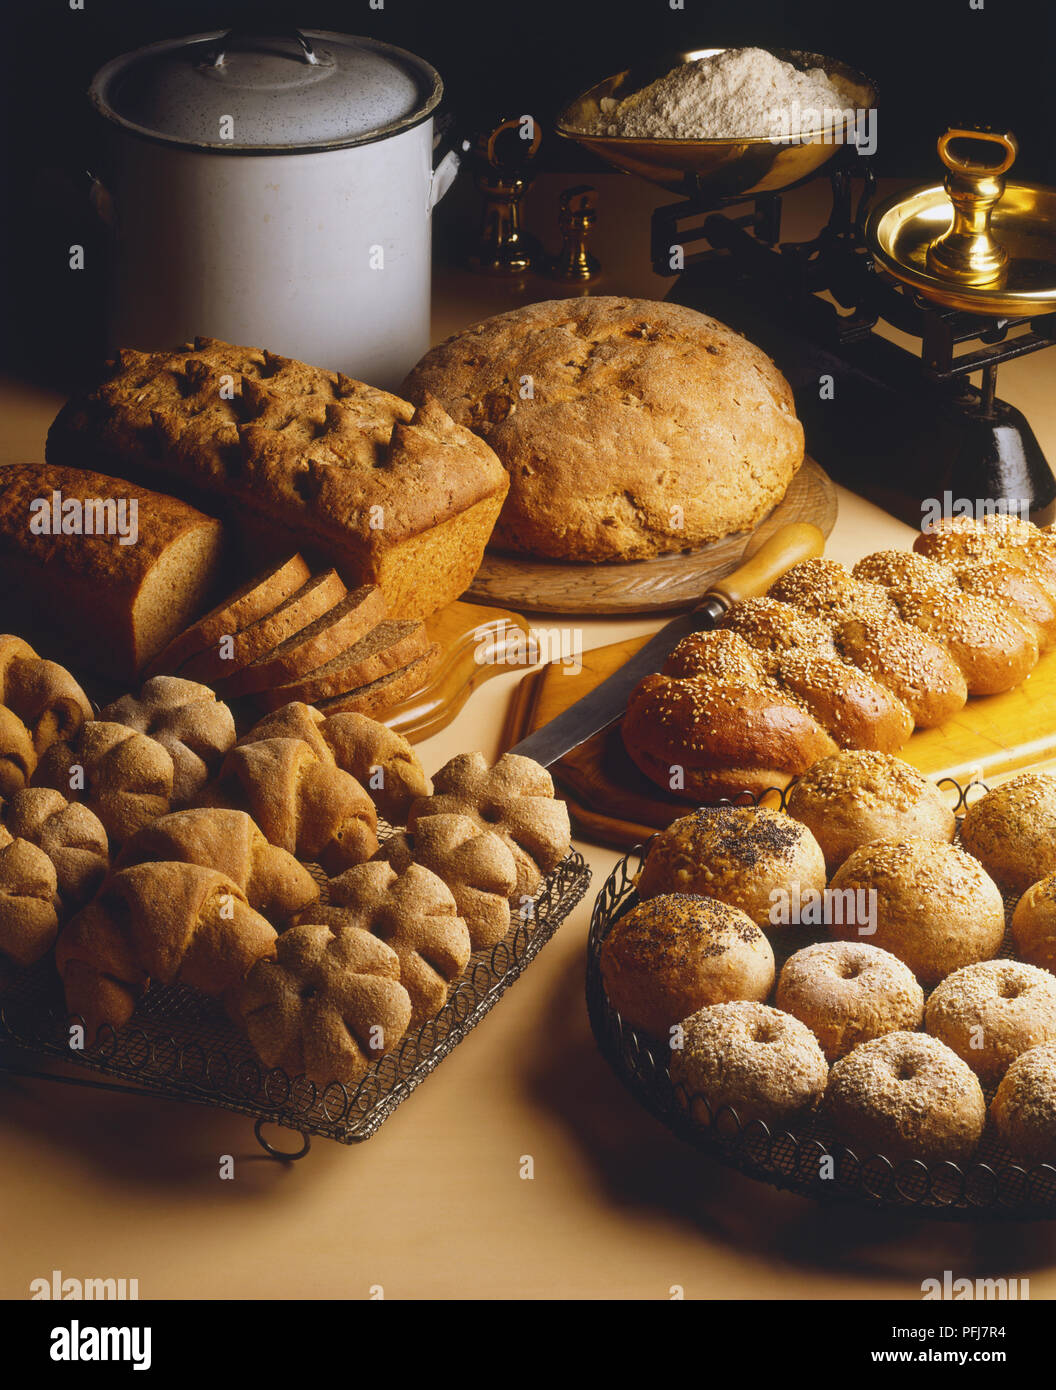 Affichage de différents aliments complets et pains croûtés, petits pains et croissants, certains saupoudrés de graines de pavot et de sésame Banque D'Images